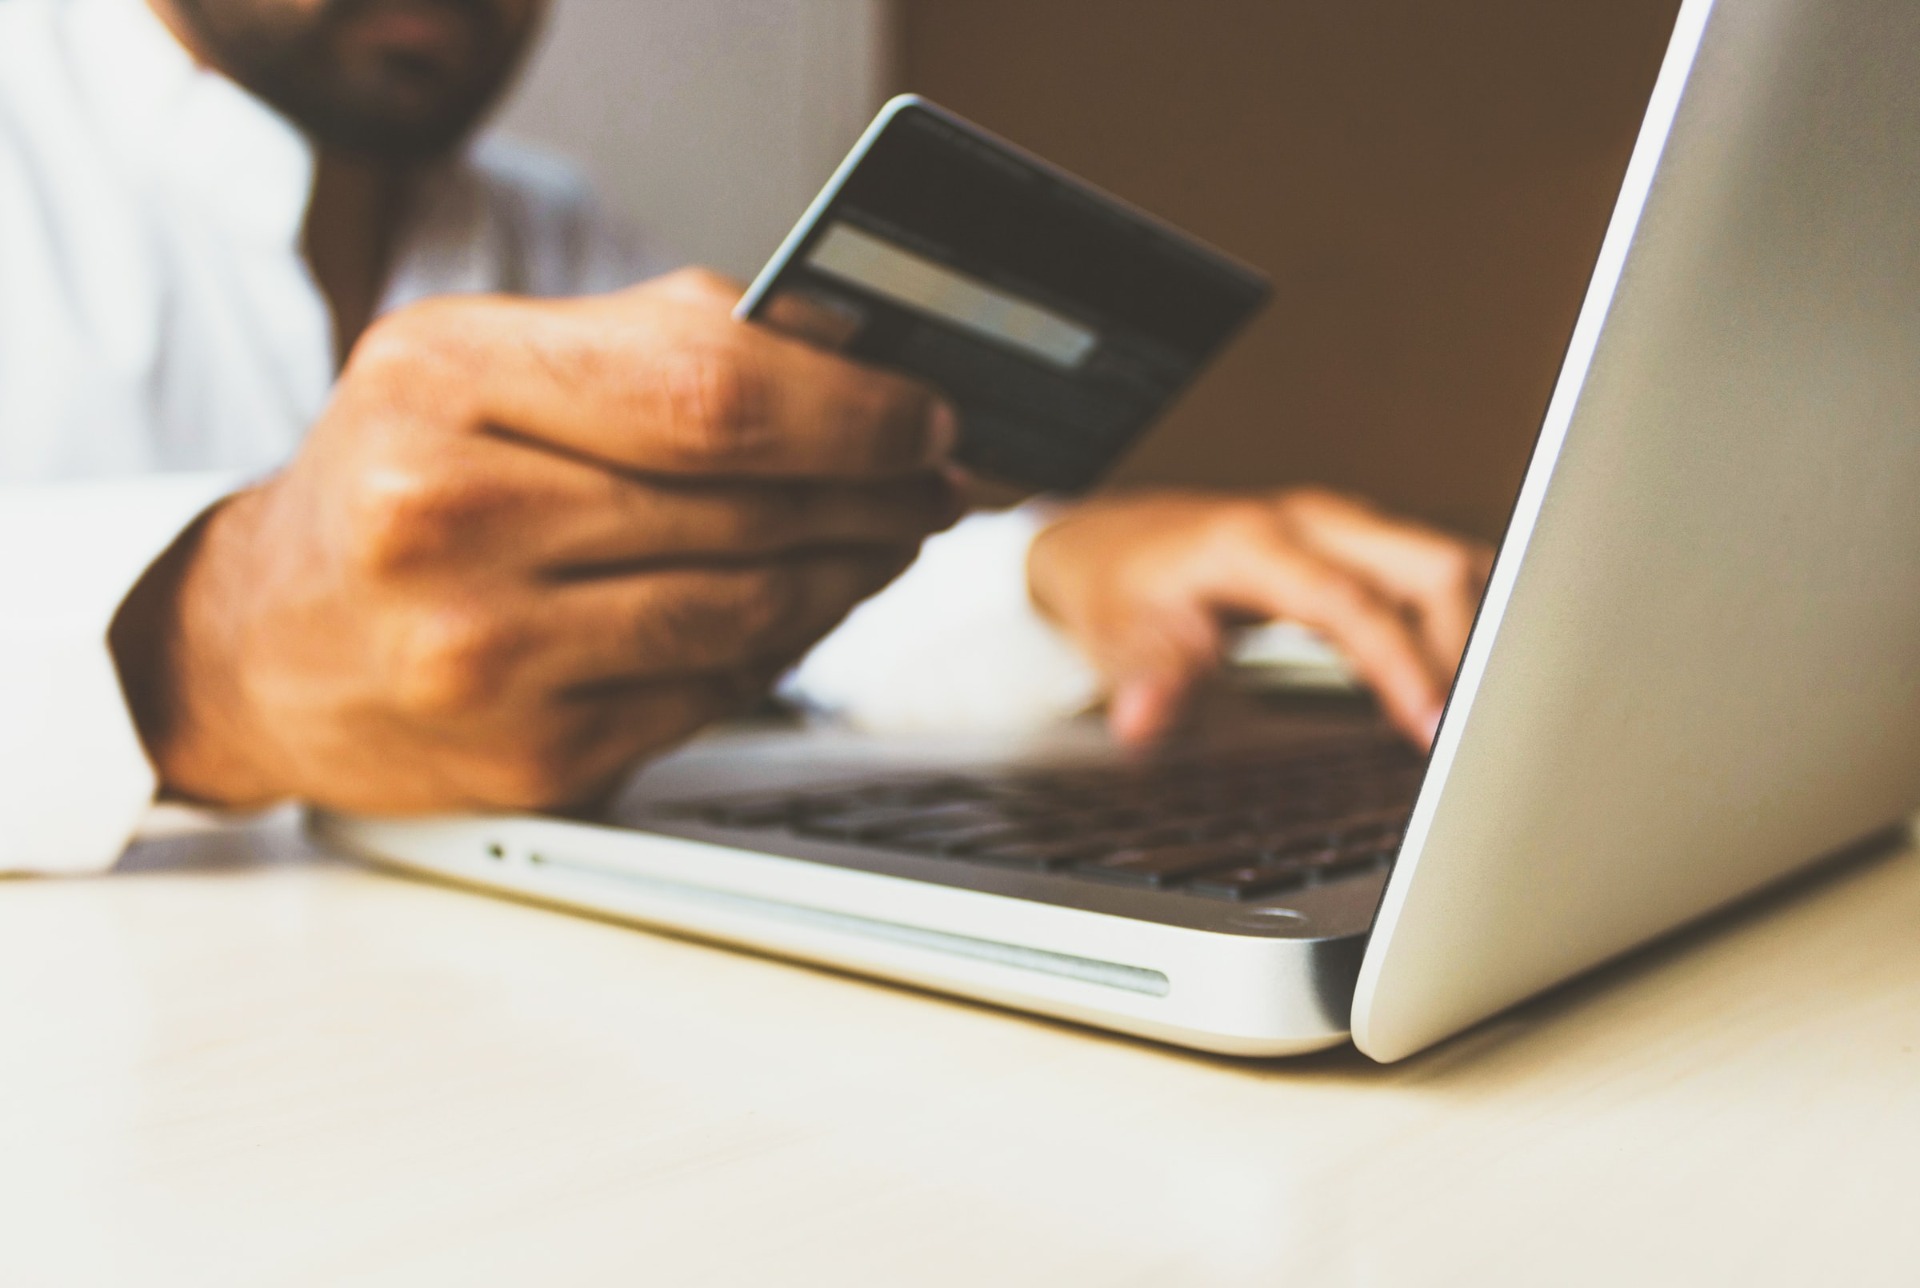 Une personne en situation de surendettement essaye d'effectuer un achat sur internet grâce à sa carte de crédit.